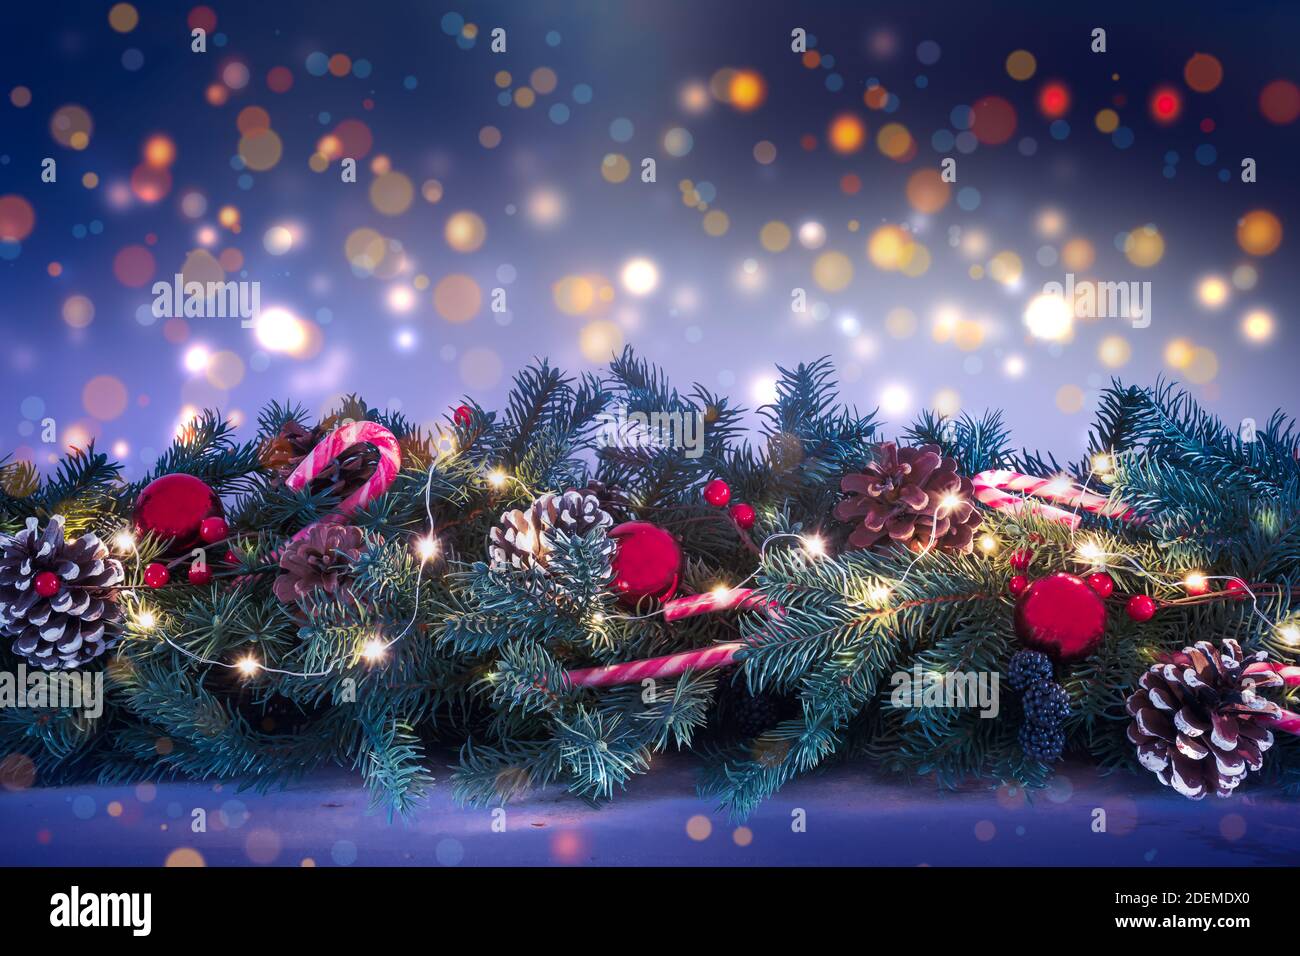 Natale Garland con luci luminose su uno sfondo sfocato di luci notturne scure. Foto Stock